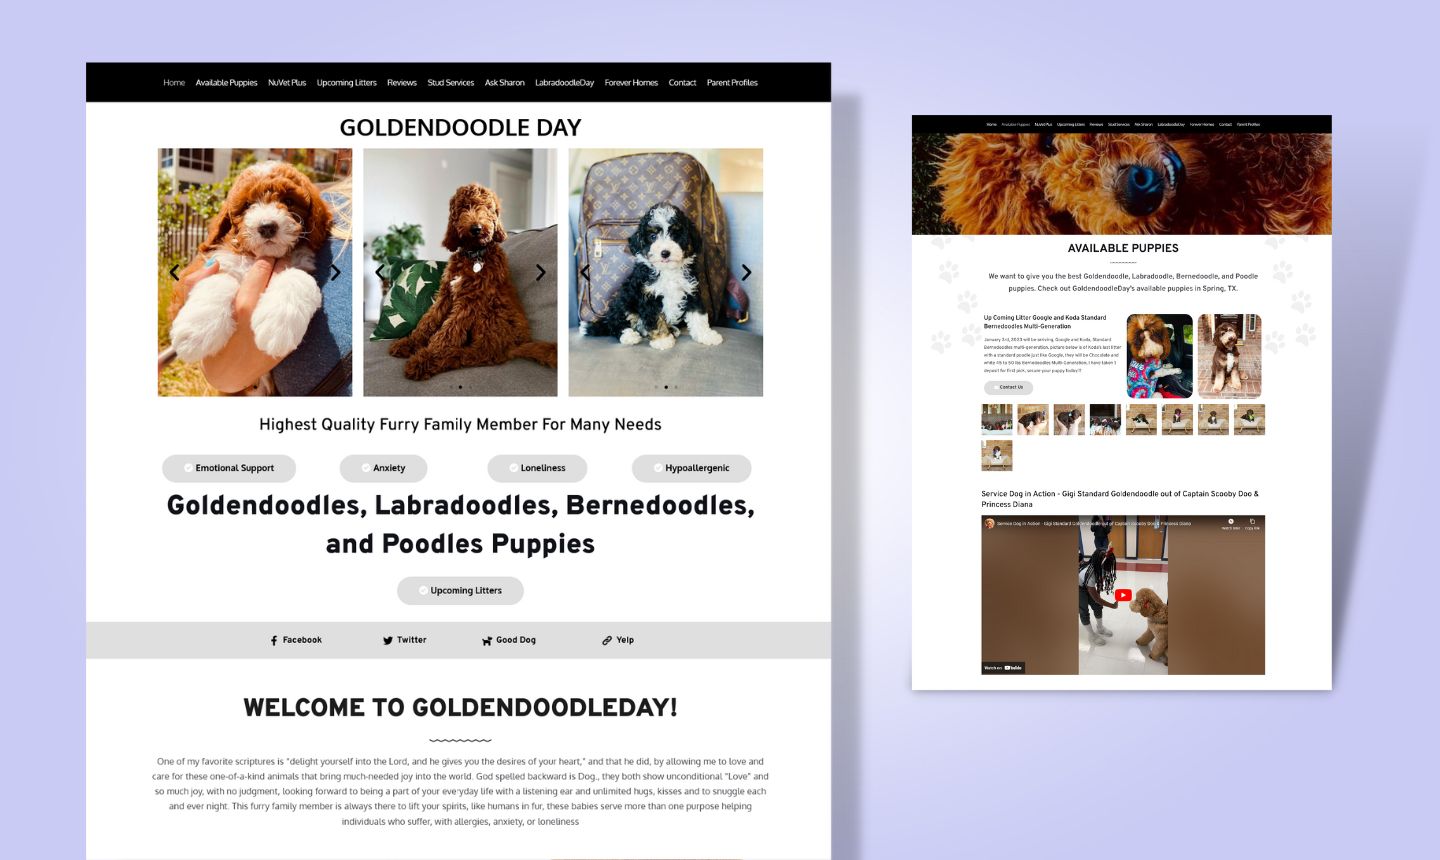 GoldenDoodly Day website design